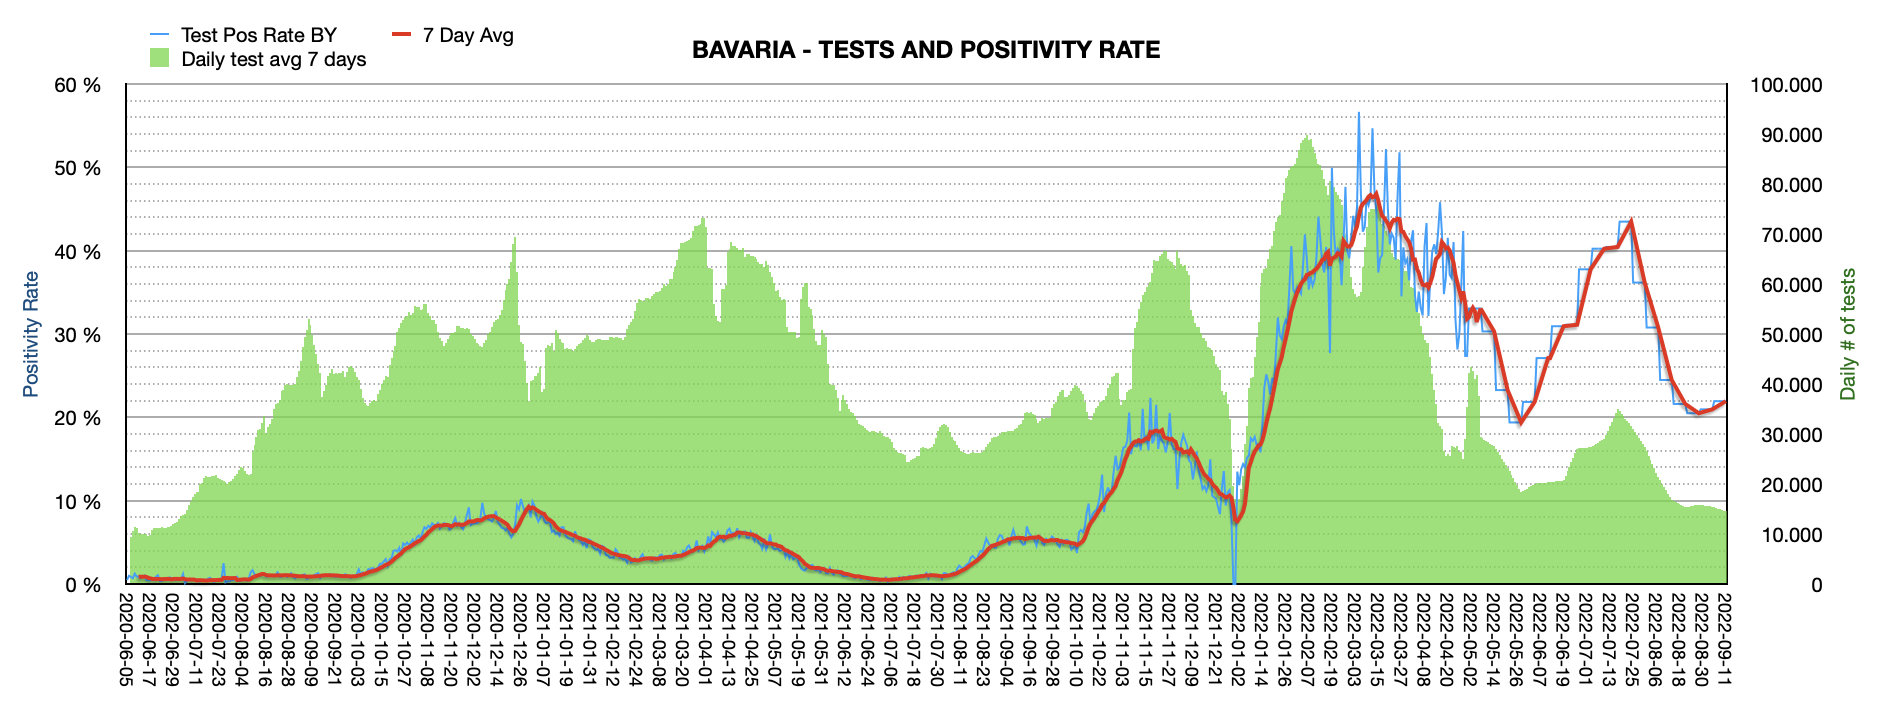 Grafik mit durchgeführten PCR Tests pro Tag in Bayern seit Juni 2020. Die Zahl der Tests pro Tag ist mit ca. 14.552 weiterhin niedrig und weit vom Maximum von ca. 100.000 Tests/Tag entfernt. Die Positivrate steigt auf jetzt 21,95%.